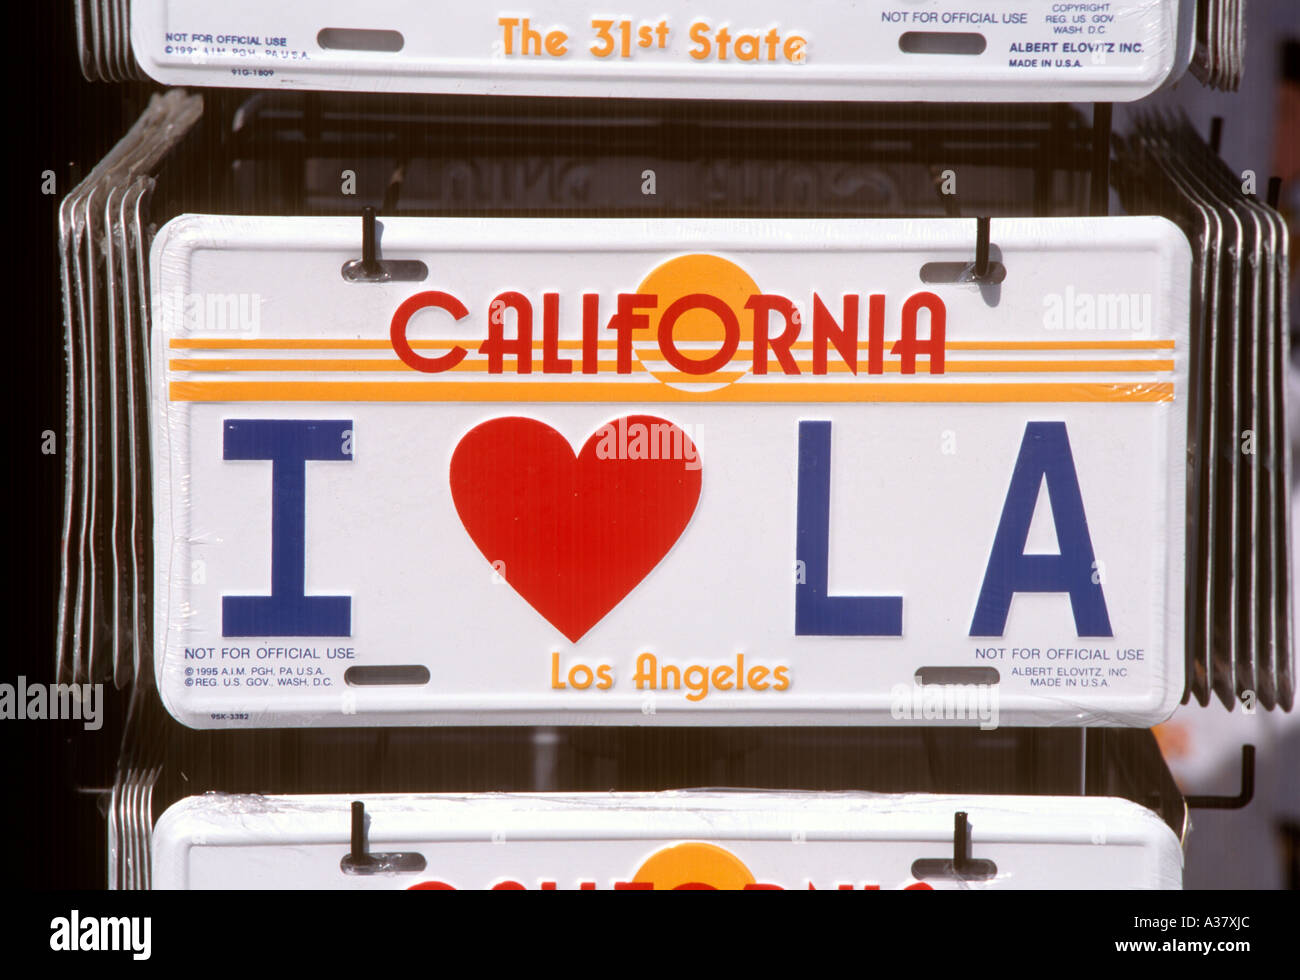 J'adore la plaque souvenir, Venice Beach, Los Angeles, Californie, USA Banque D'Images